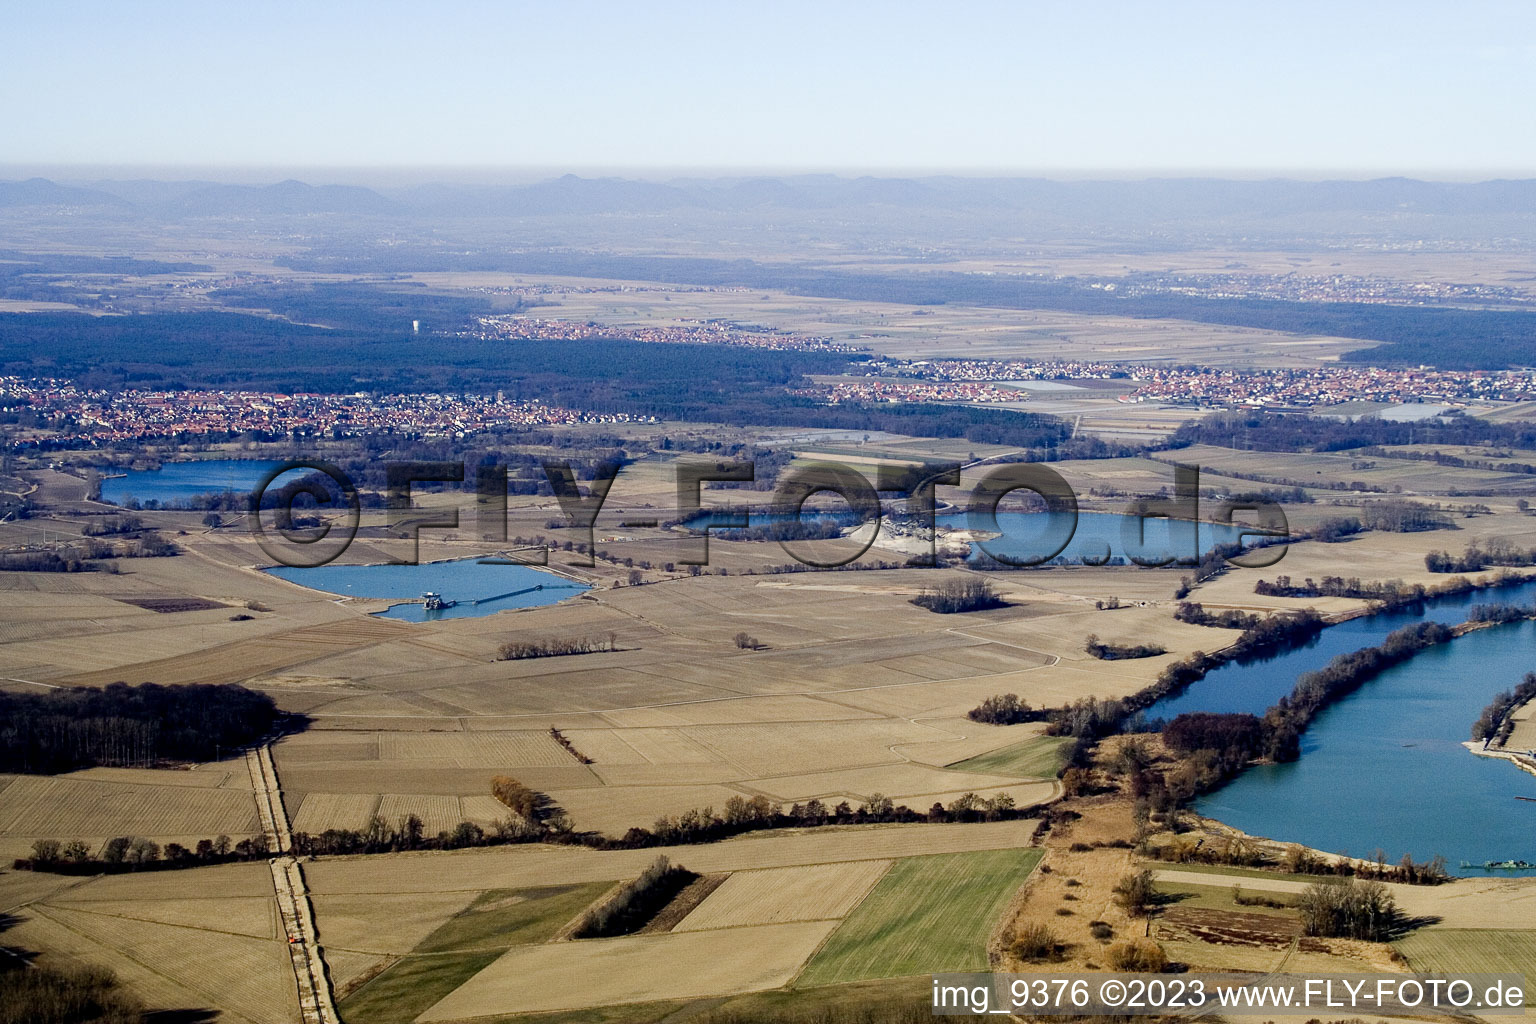 Vue aérienne de Etangs de carrière entre Neupotz et Jockgrim à Jockgrim dans le département Rhénanie-Palatinat, Allemagne